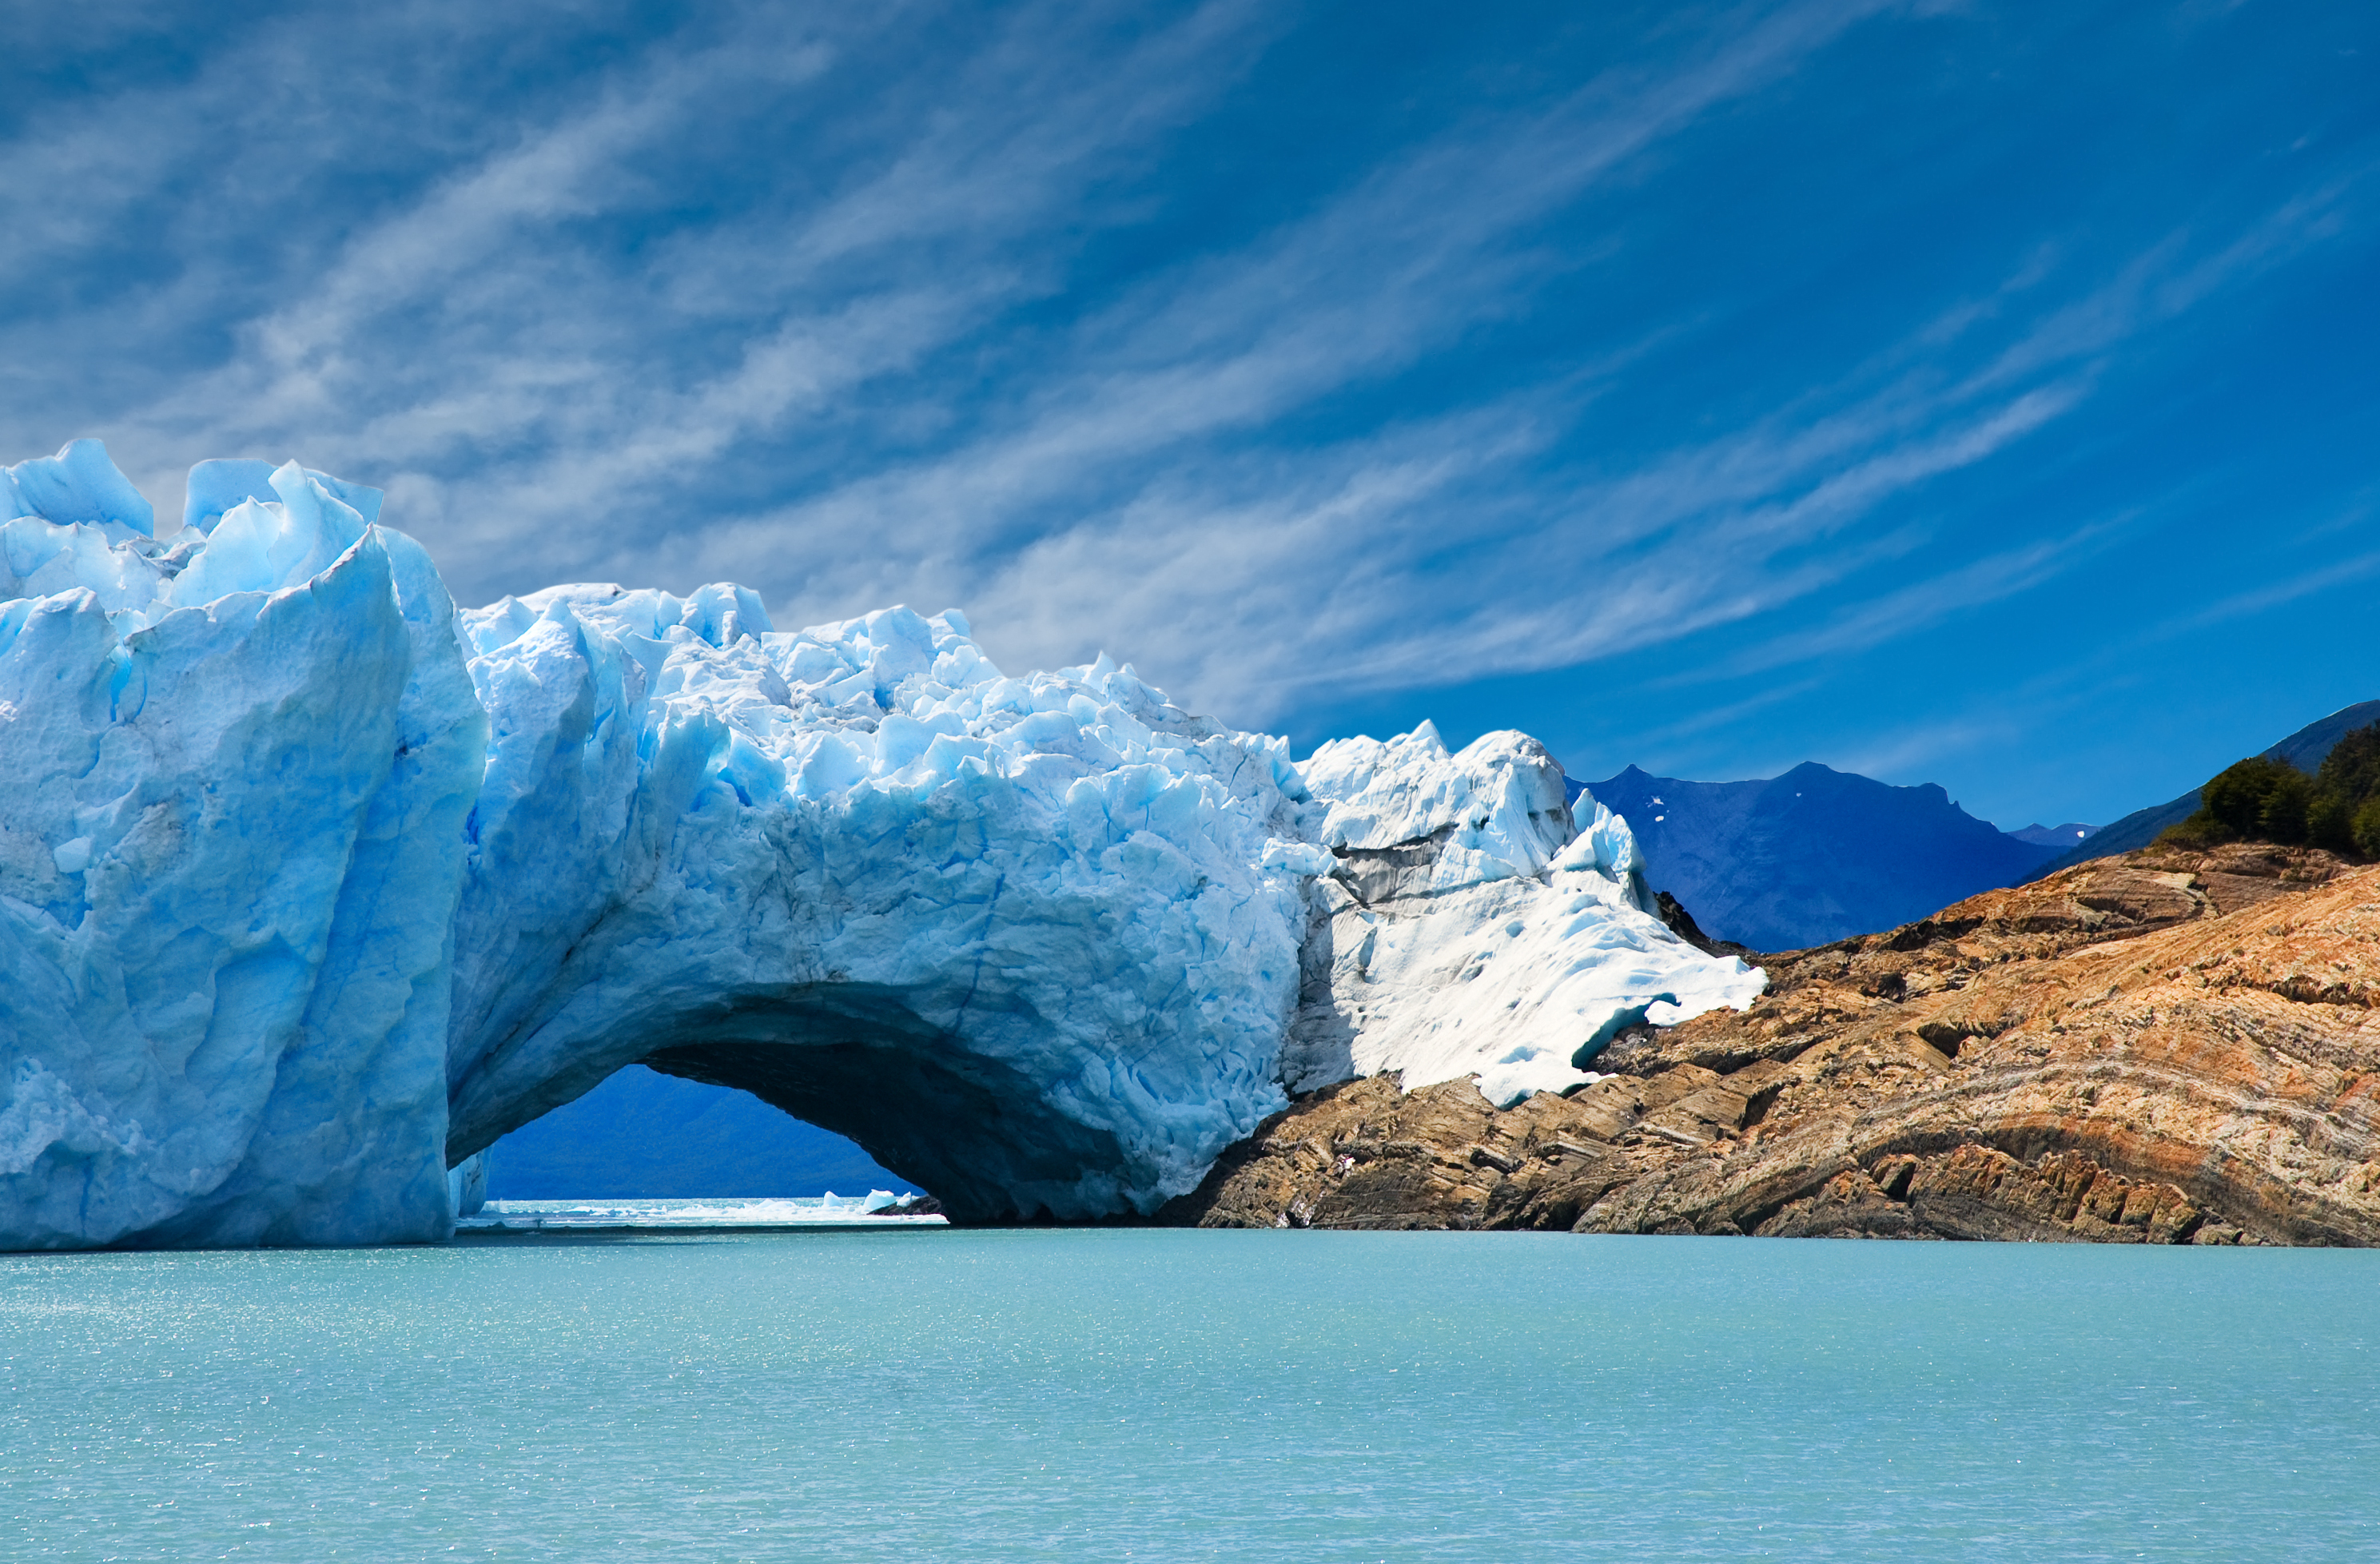 The Perito Moreno Glacier in Argentina